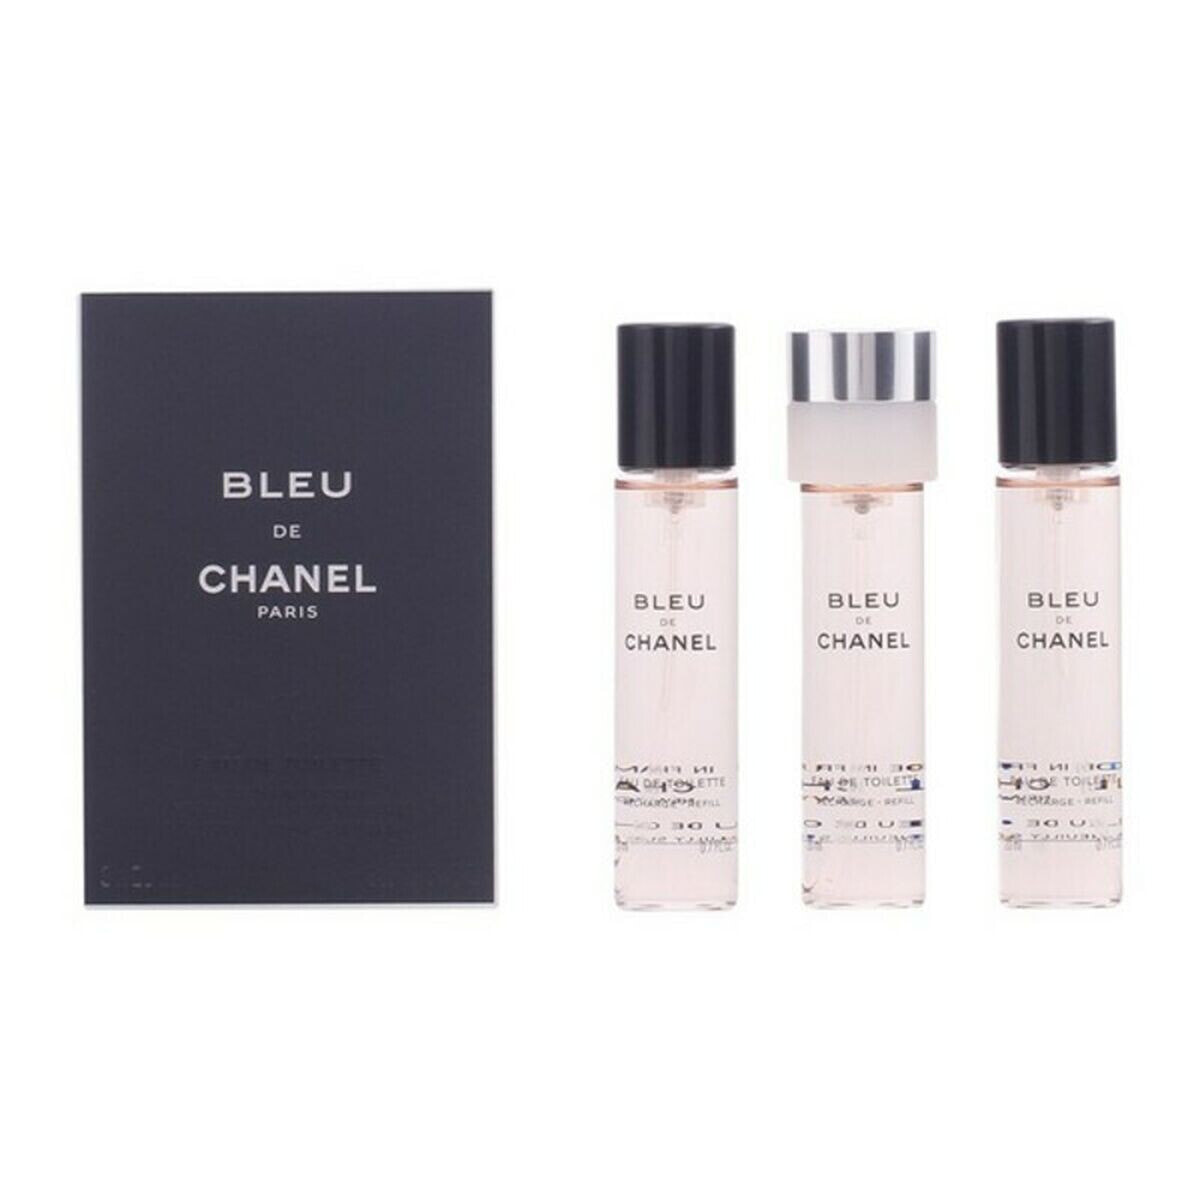 Мужская парфюмерия Chanel EDT Bleu de Chanel 50 ml